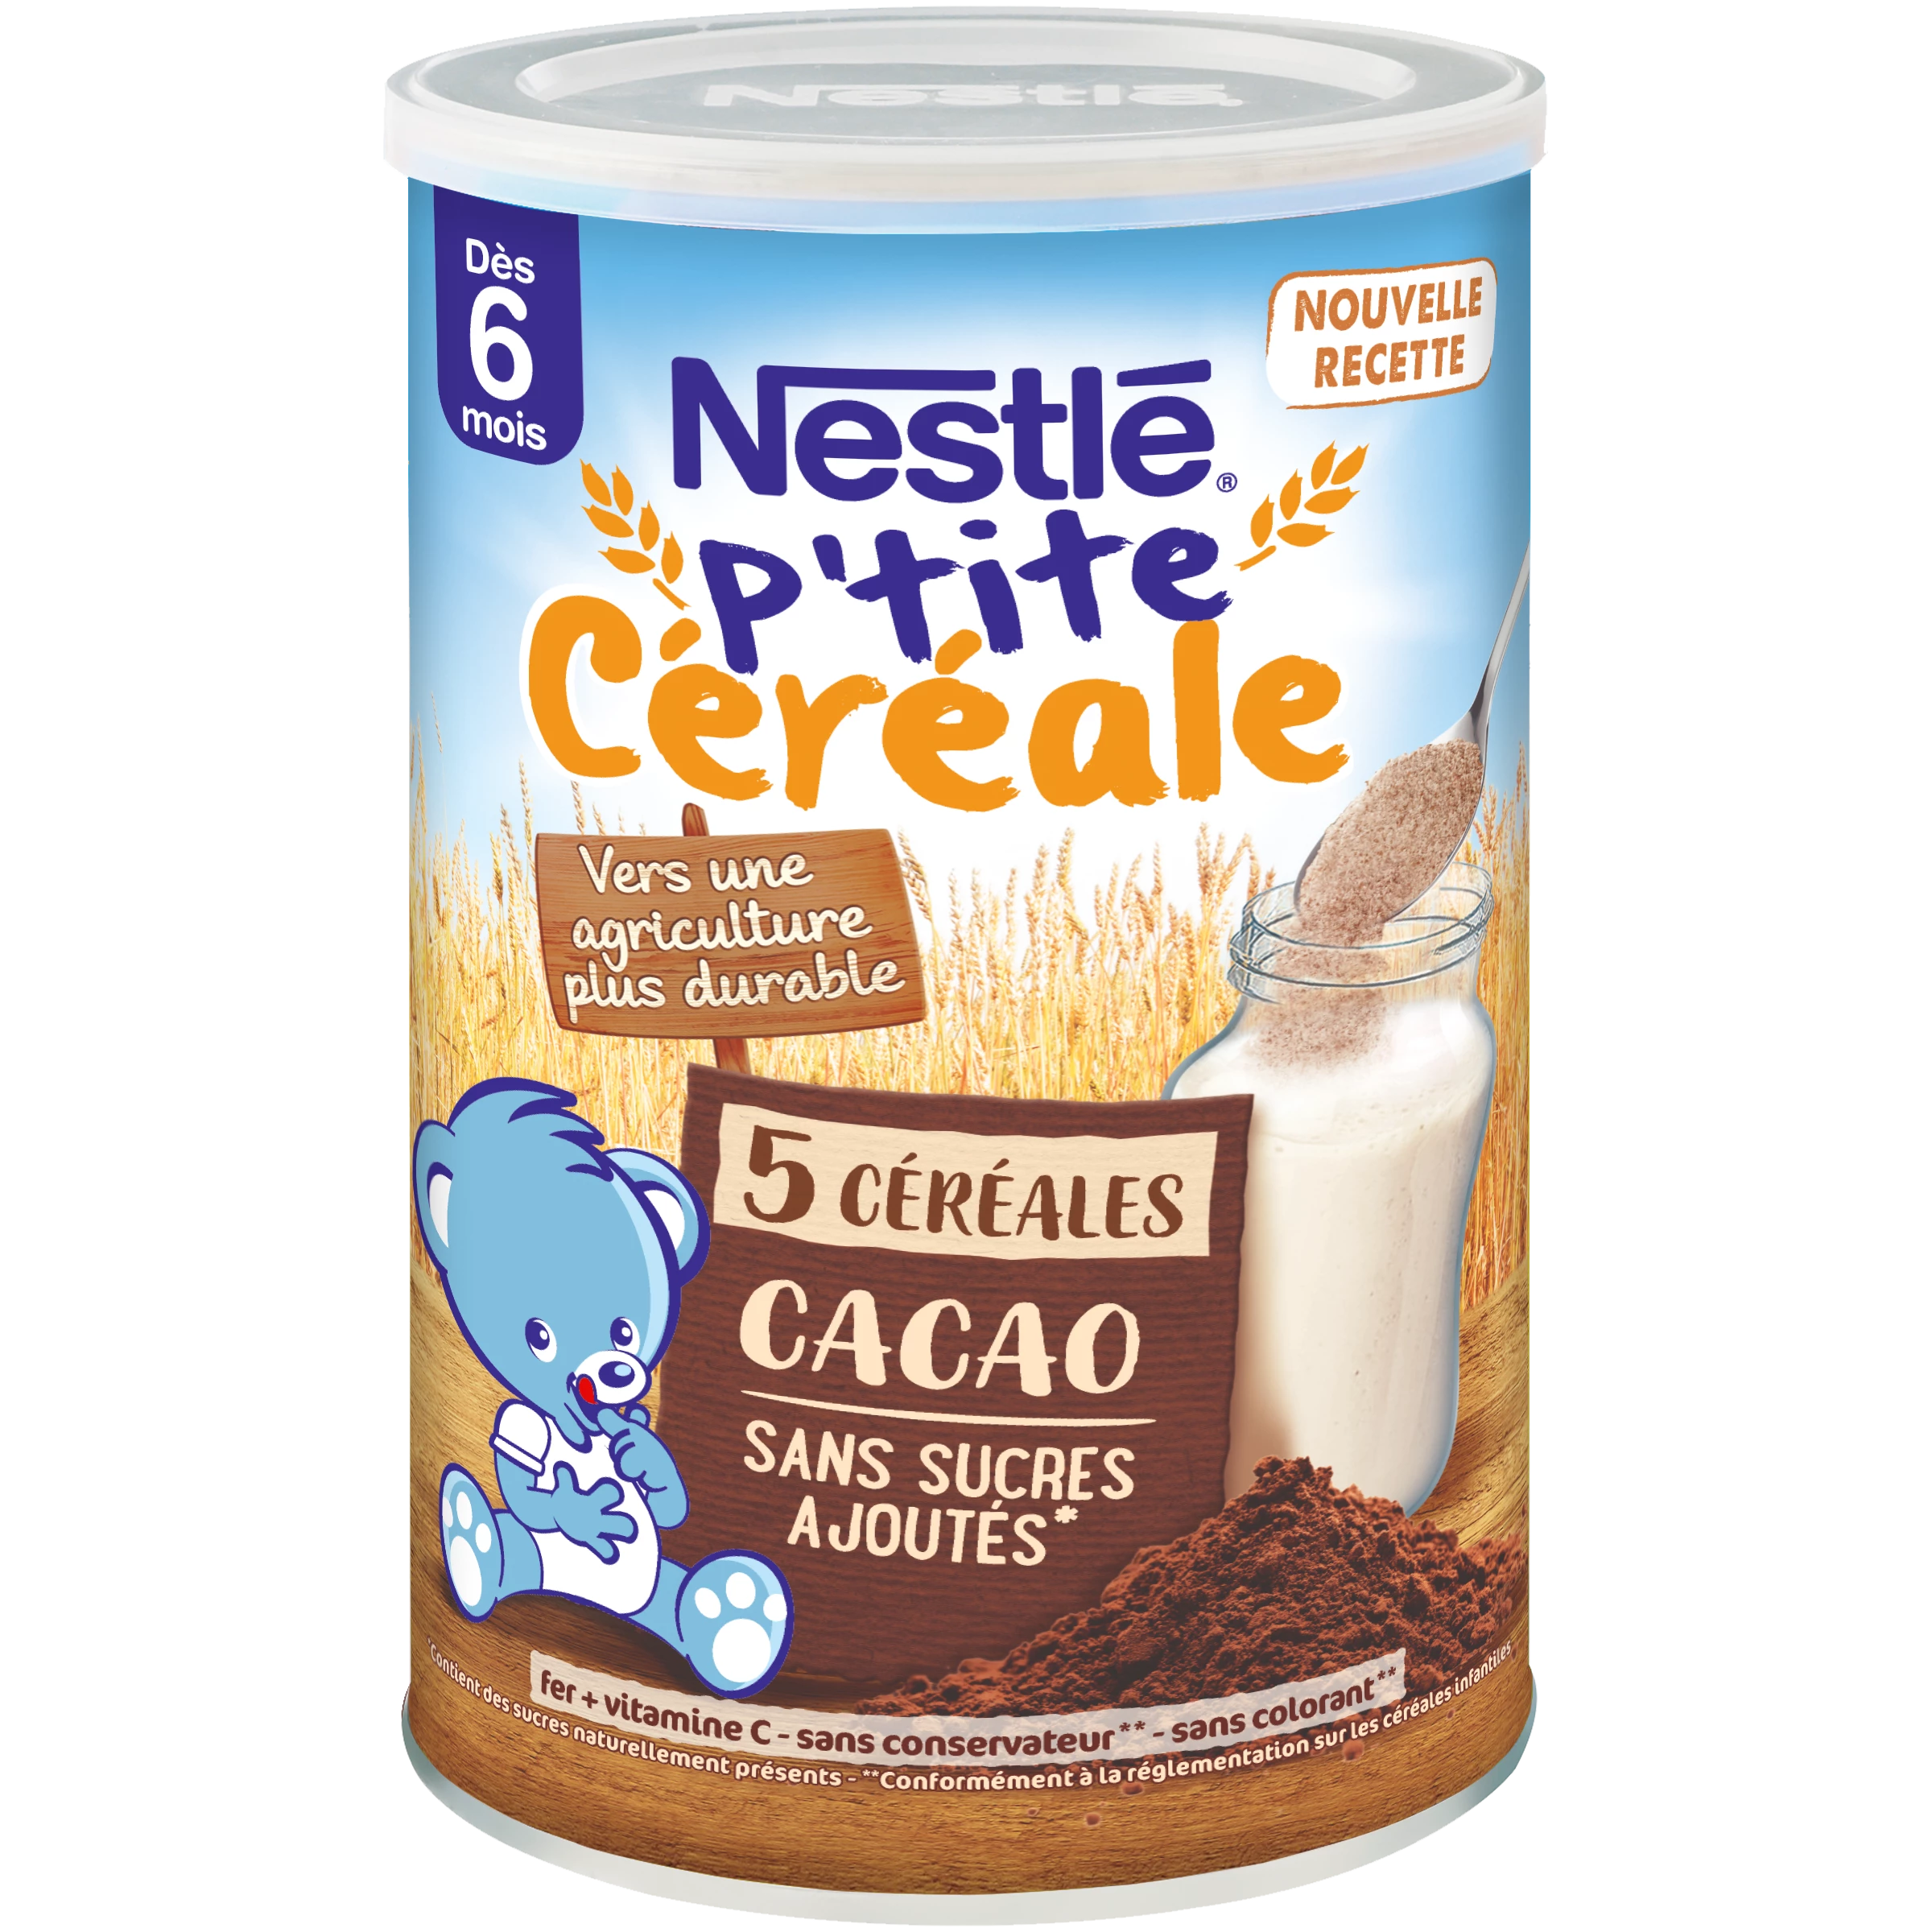 P'tite Cereal Cacao 415g - NESTLÉ